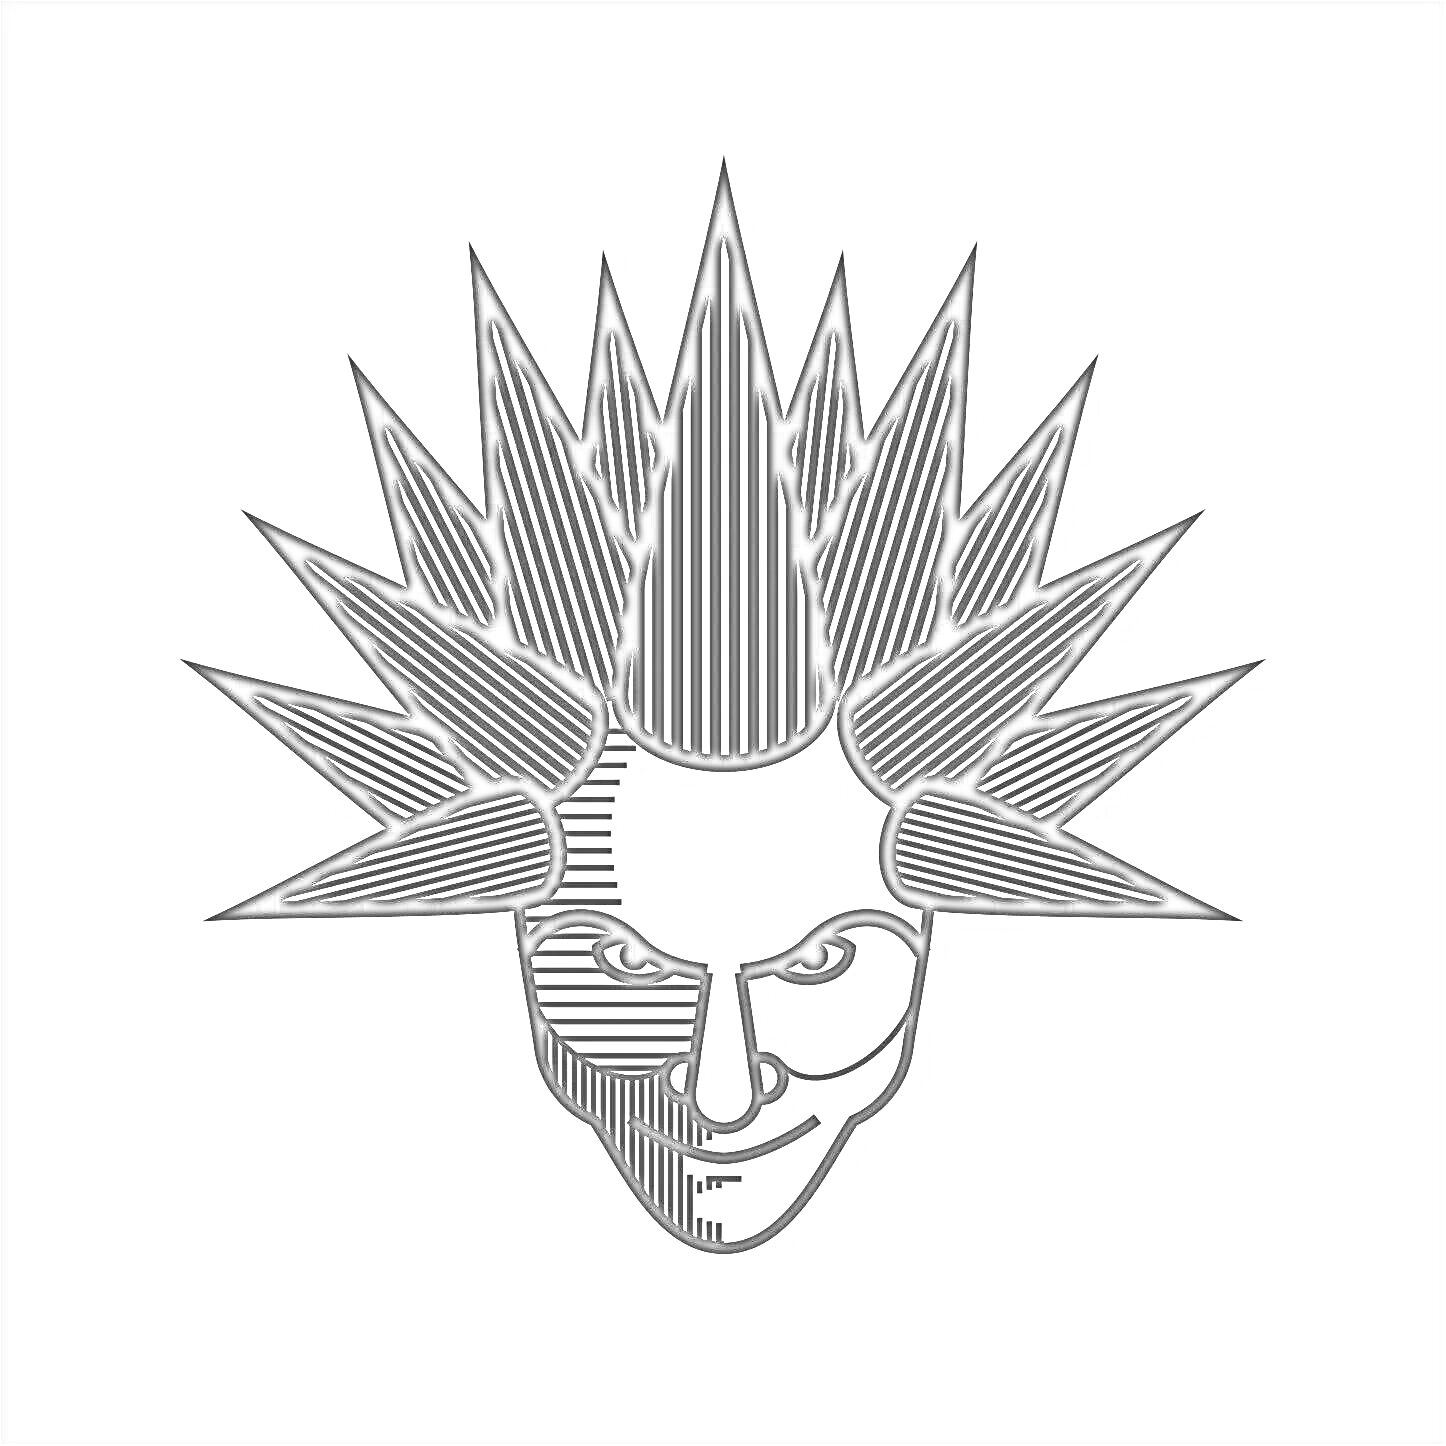 Раскраска Линейная иллюстрация лица с прической в виде шипов и асимметричными тенями